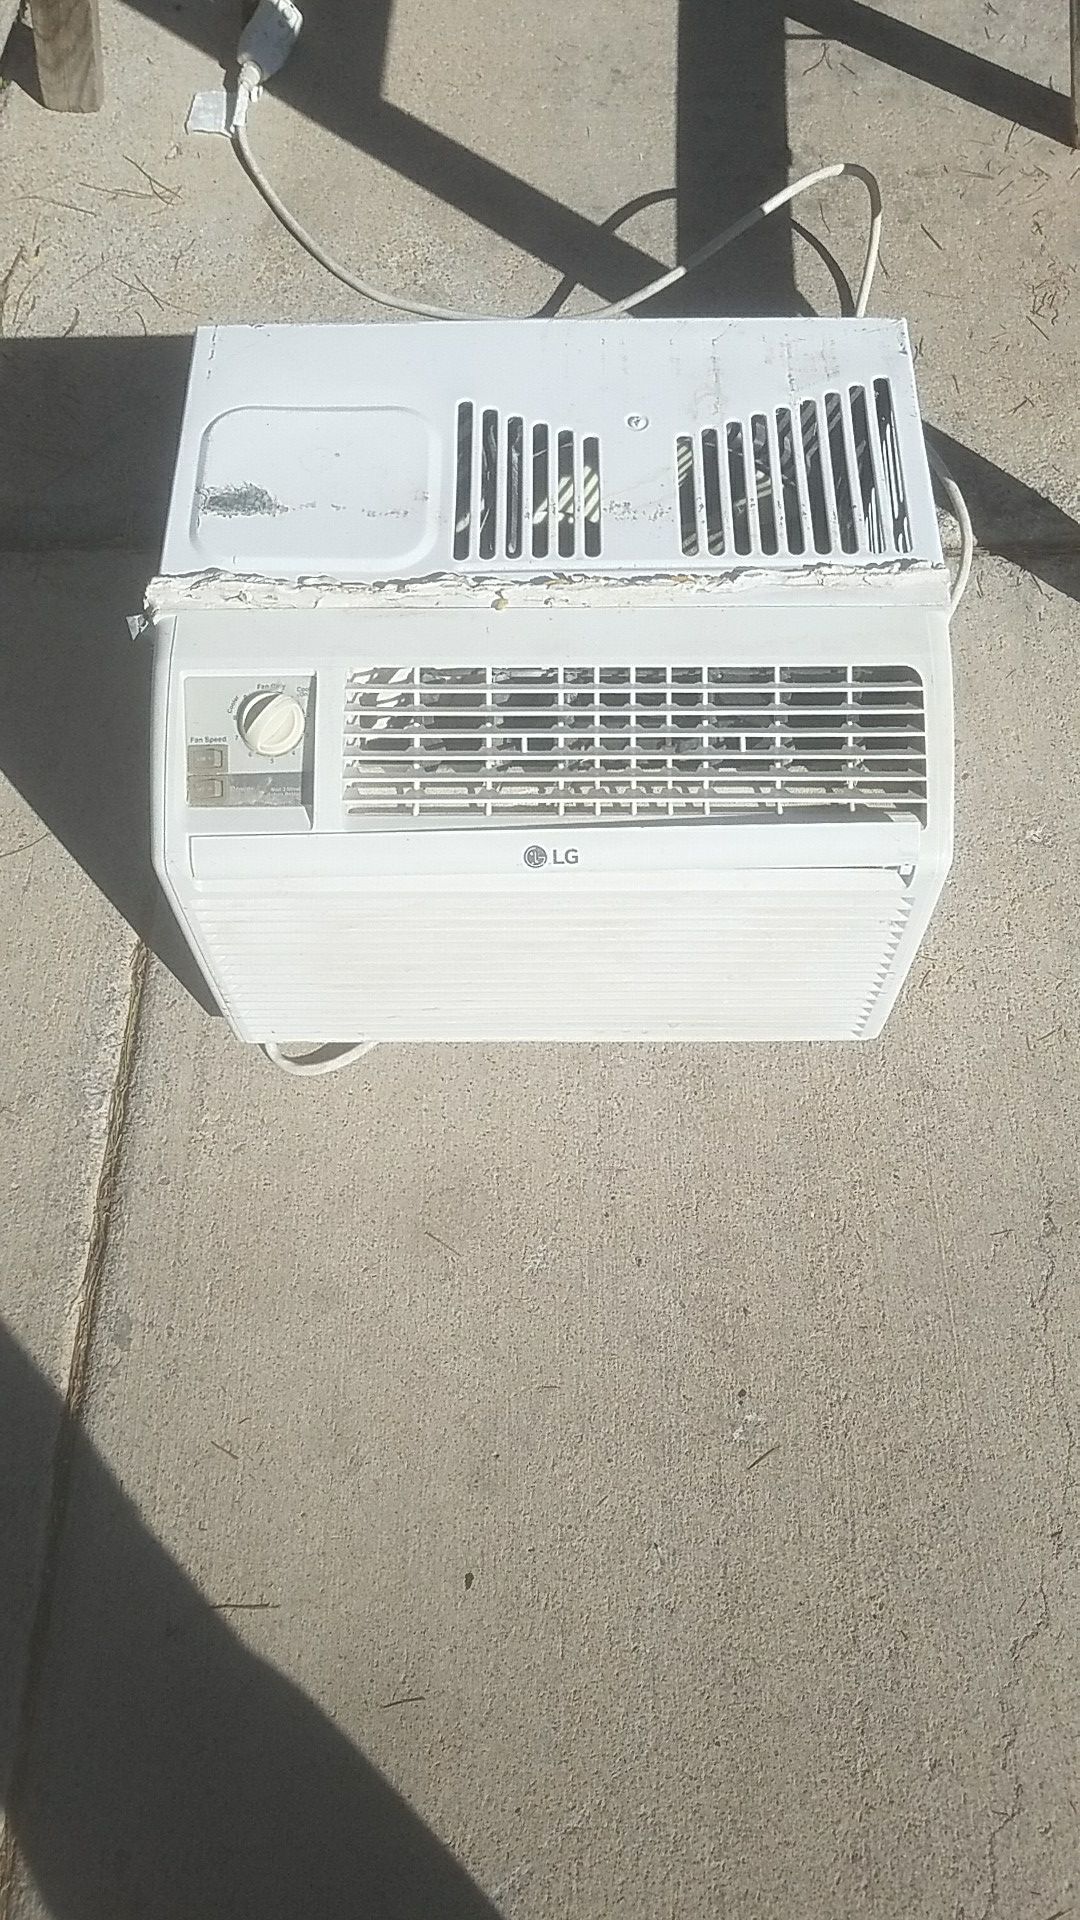 LG Air conditioner